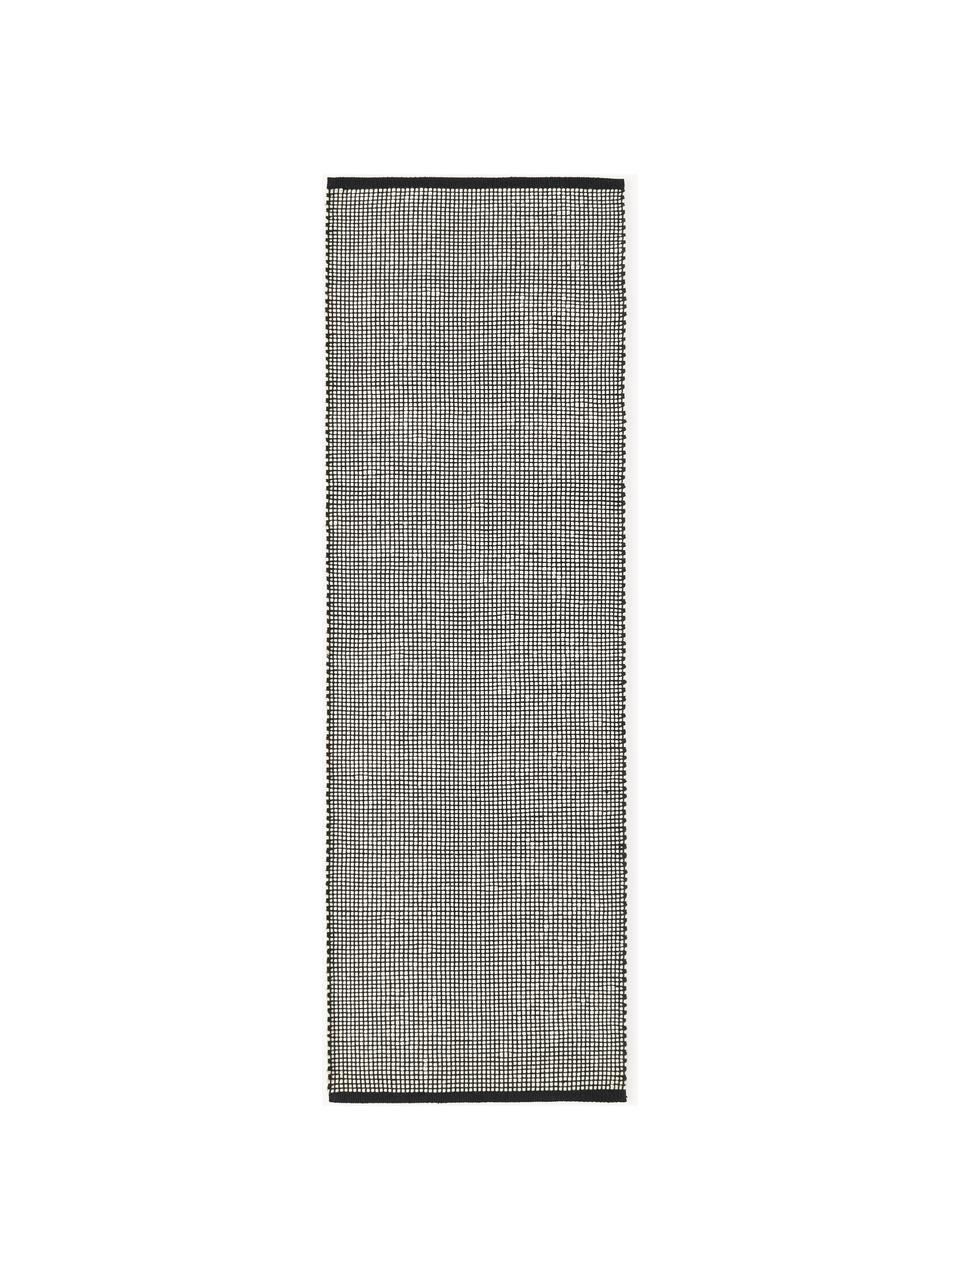 Passatoia in lana fatta a mano Amaro, Retro: 100% cotone certificato G, Nero, bianco crema, Larg. 80 x Lung. 250 cm